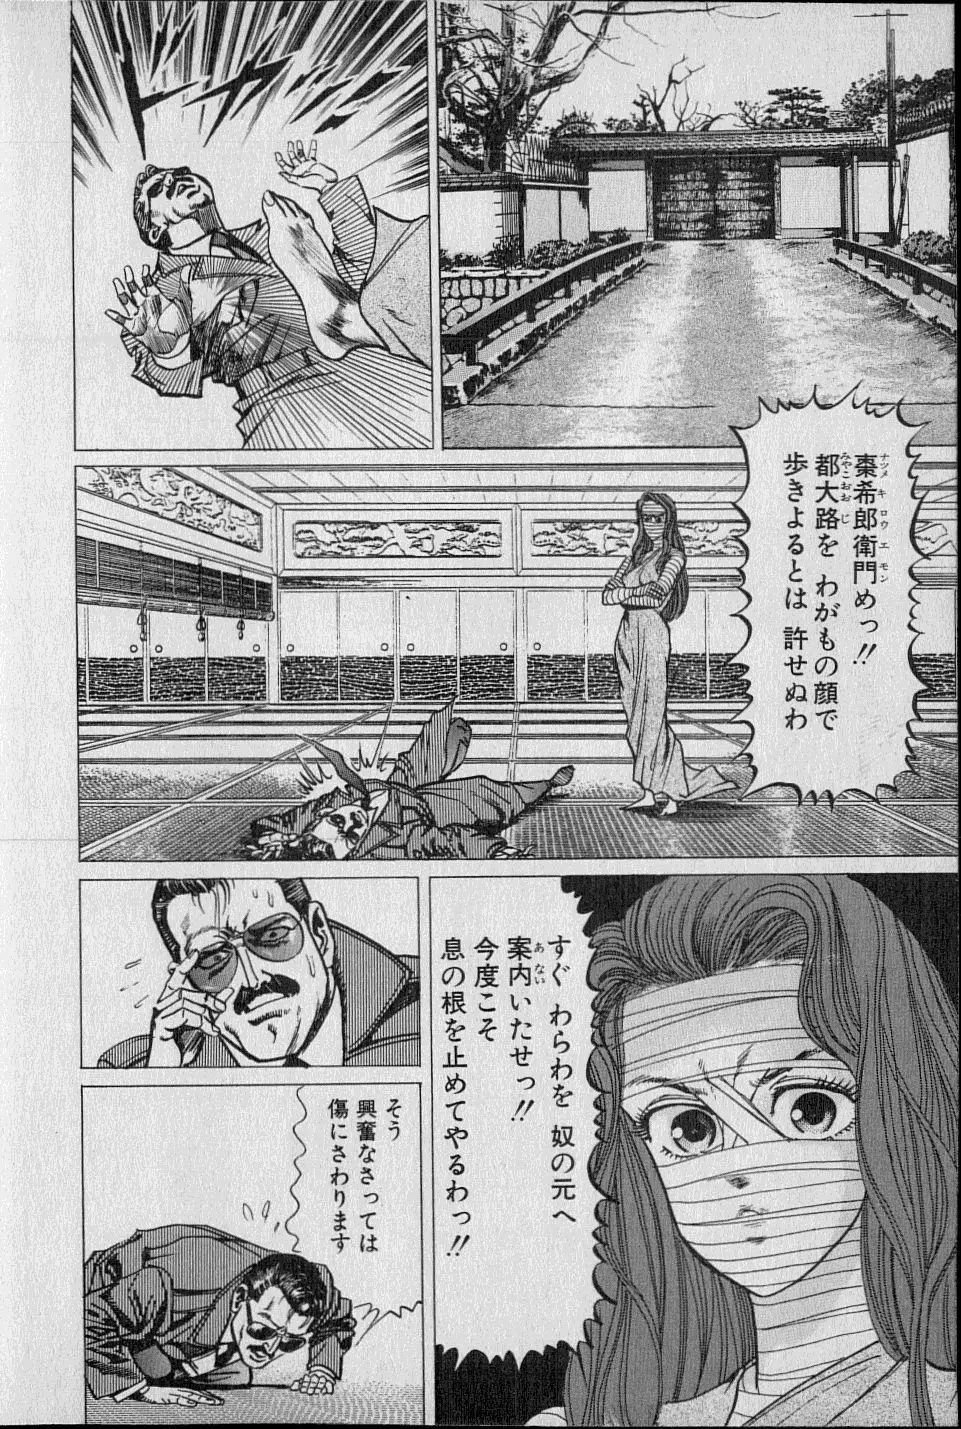 Kouryuu no Mimi Volume 02 Page.13